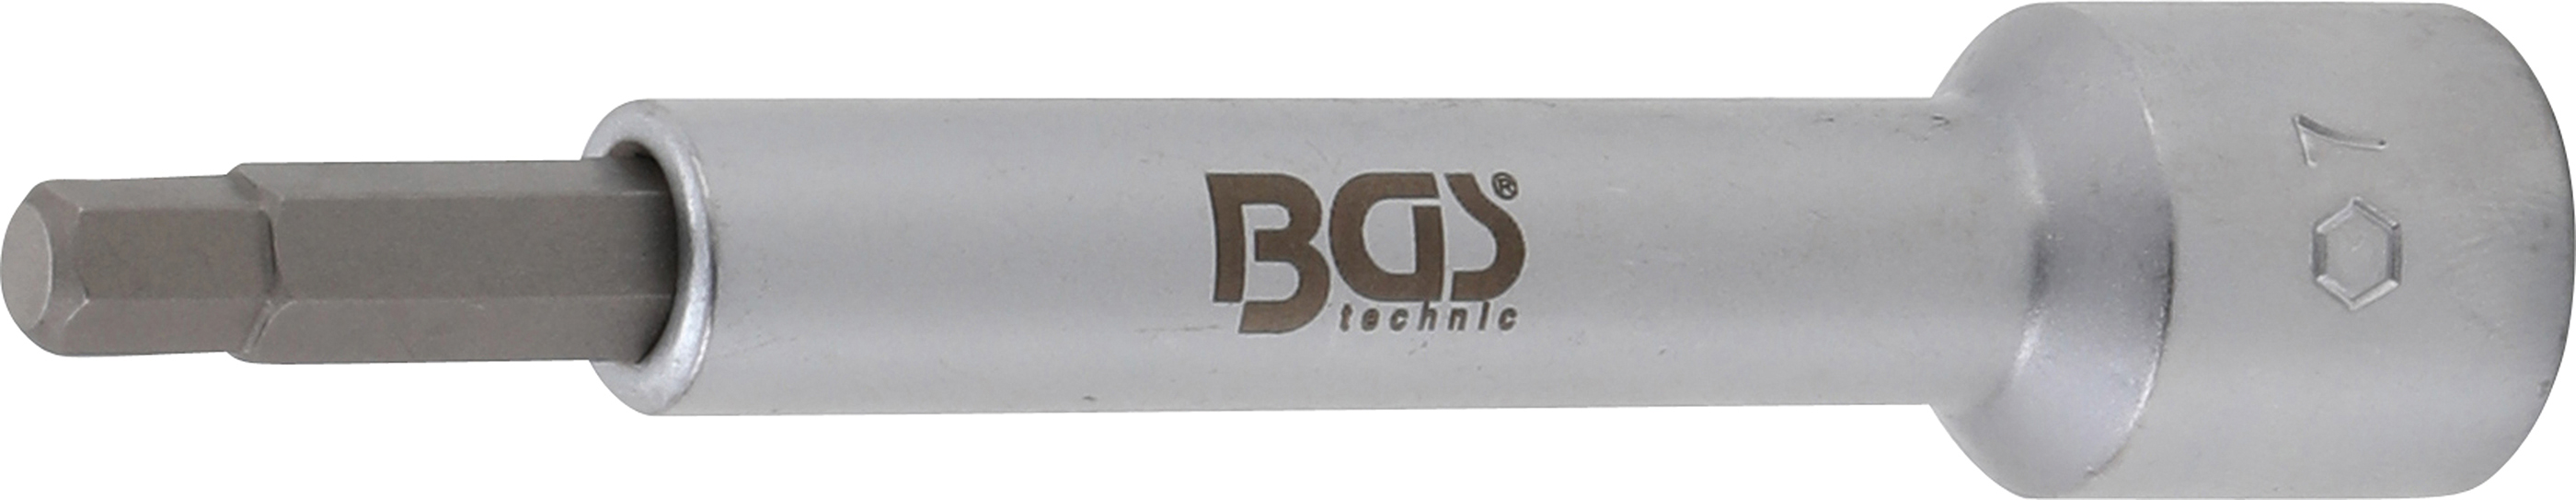 BGS 2087-H7 Bit antrenare pătrat interior 12,5 mm (1/2") Inbus 7 mm